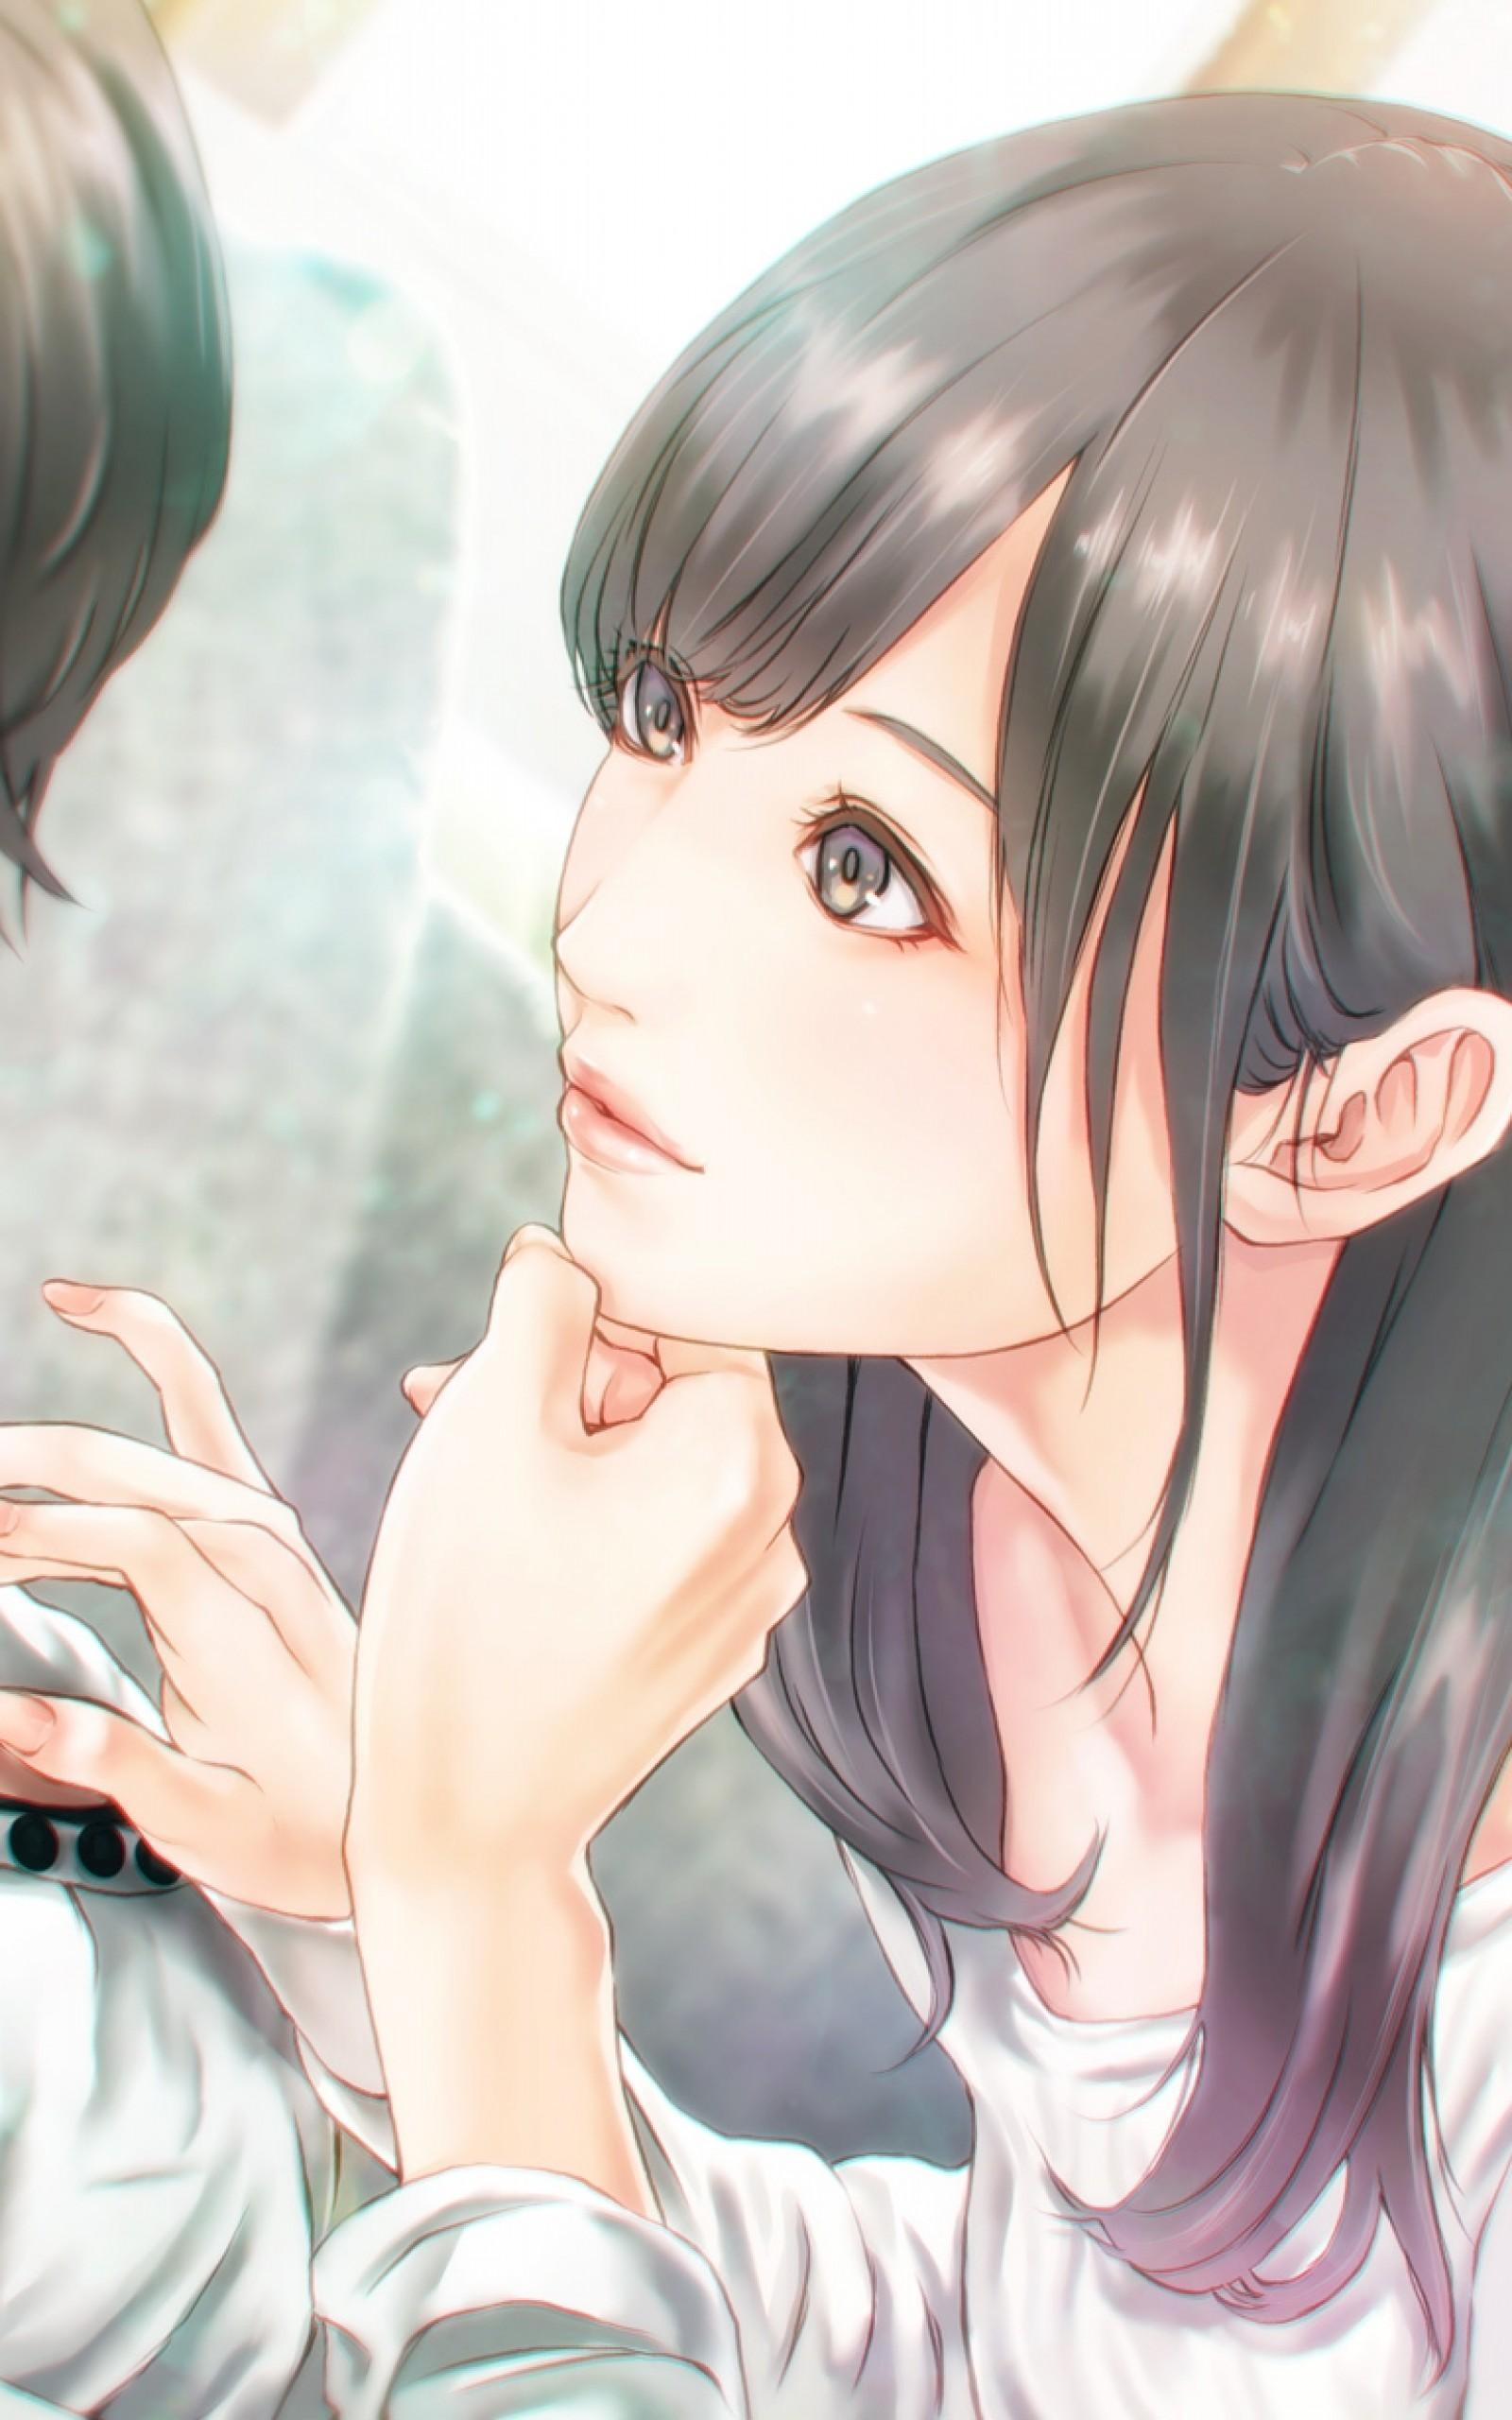 Download 1600x2560 Anime Couple, Romance, Semi Realistic, Cute